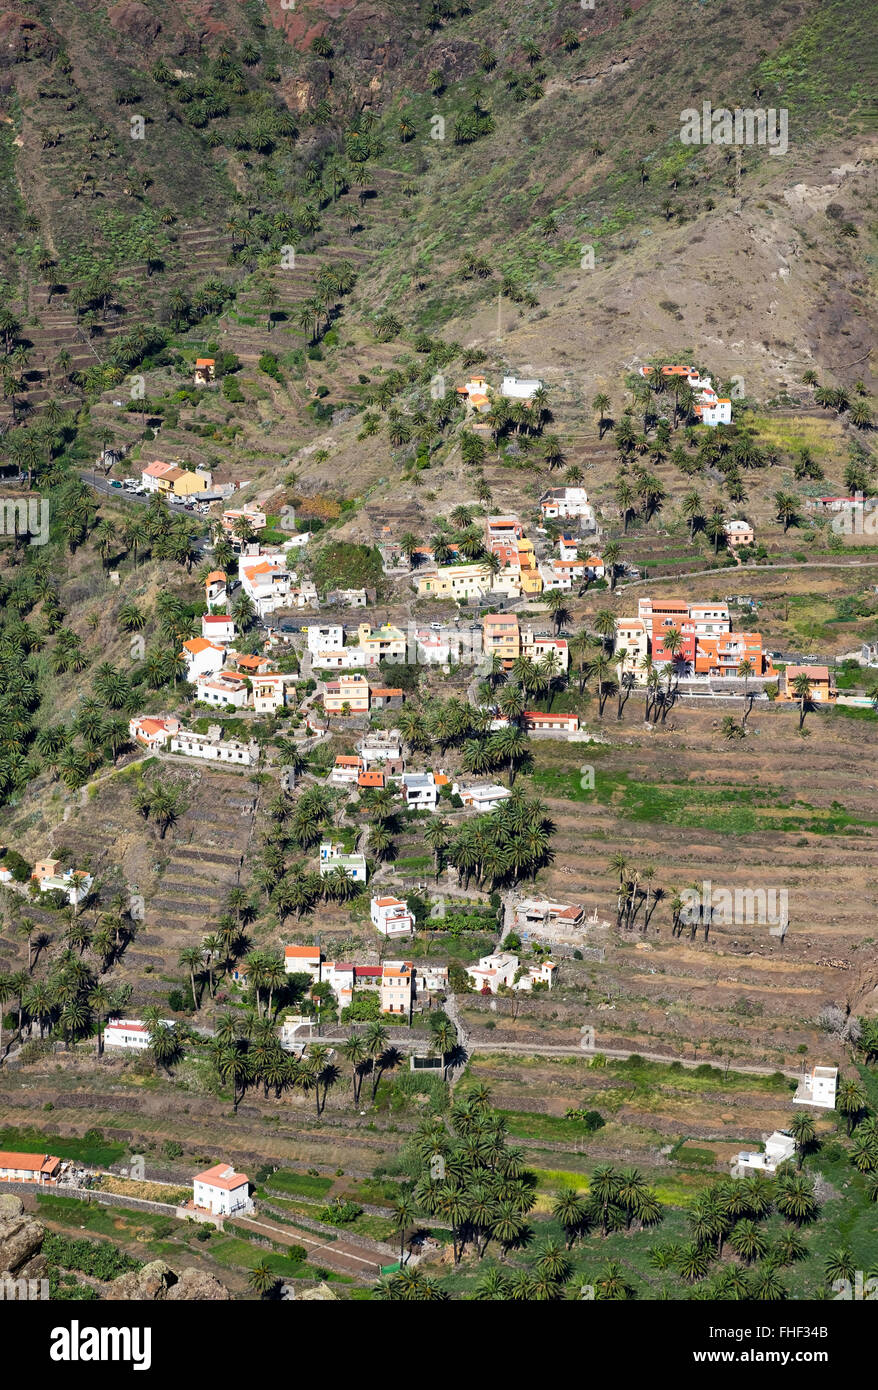 Lomo del Balo, Valle Gran Rey, La Gomera, Canary Islands, Spain Stock Photo